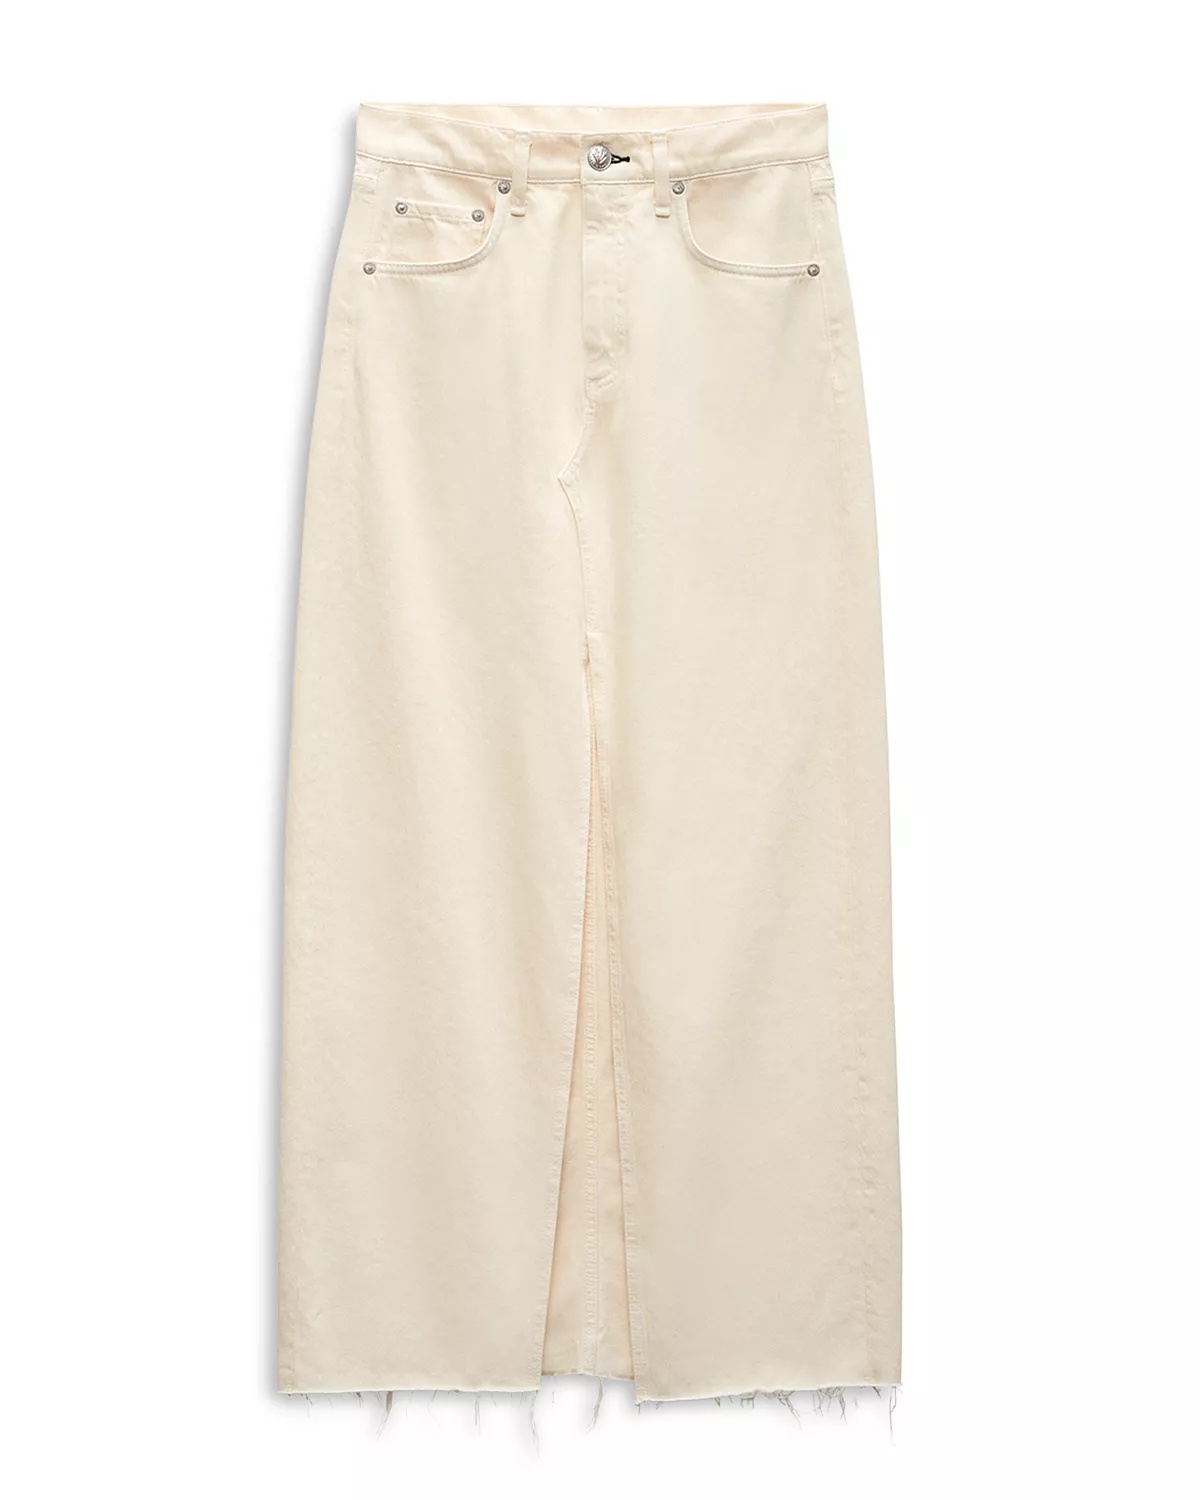 Avery Cotton Center Slit Maxi Skirt - 6